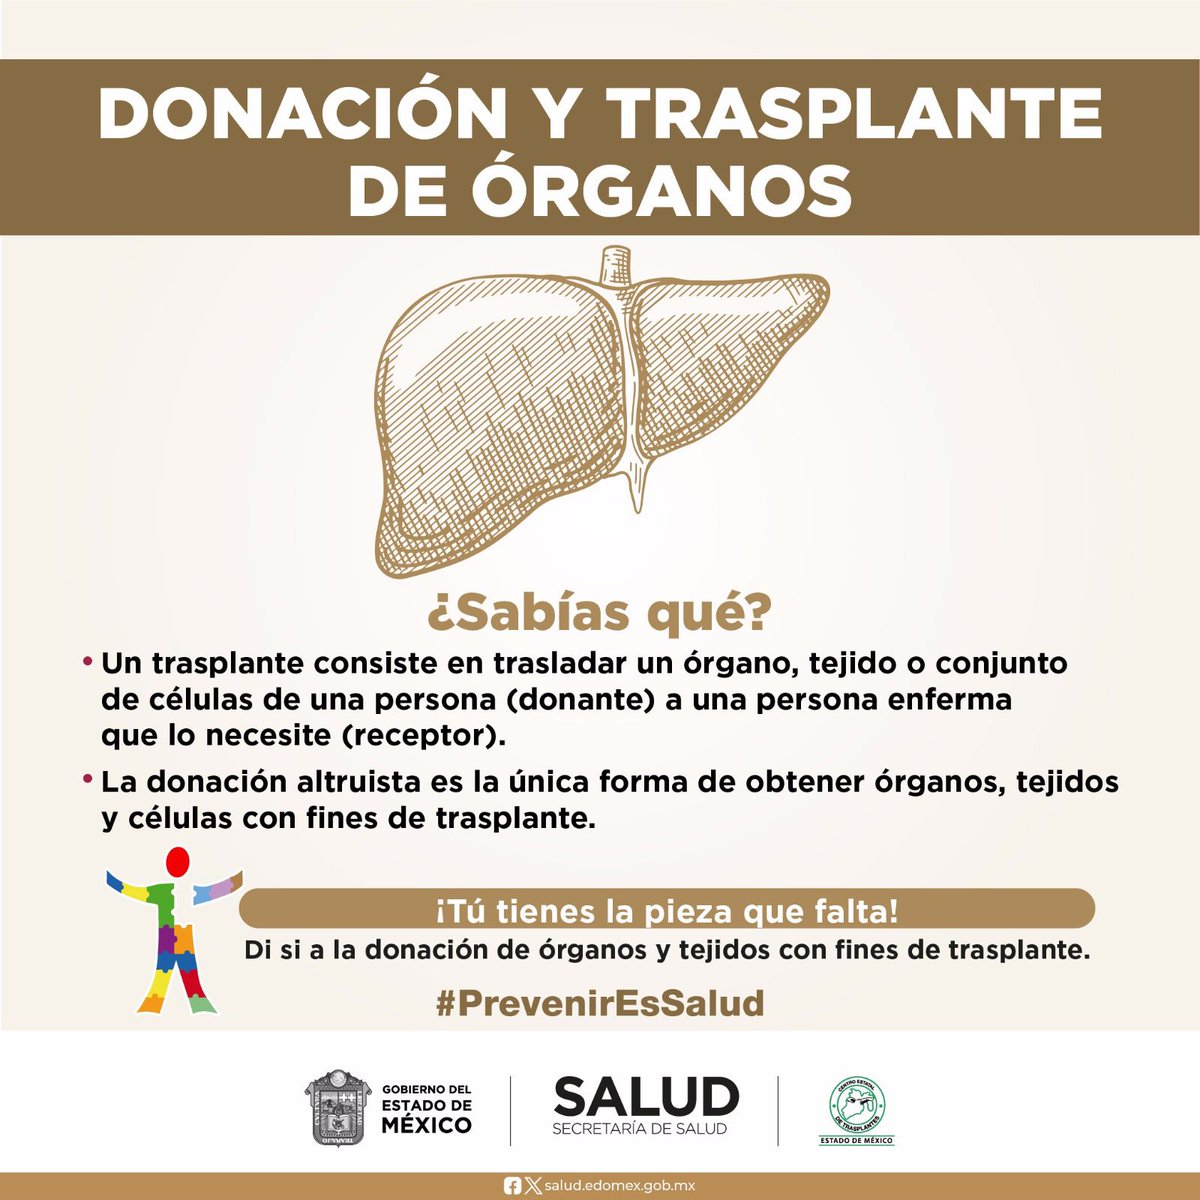 Recuerda que, la donación altruista es la única forma de obtener Órganos, Tejidos y Células con fines de trasplante, para los pacientes en espera, el #Edoméx cuenta con el Centro Estatal de Trasplantes del Estado de México #Cetraem.
#DonarÓrganosEsDonarVida
@SaludEdomex